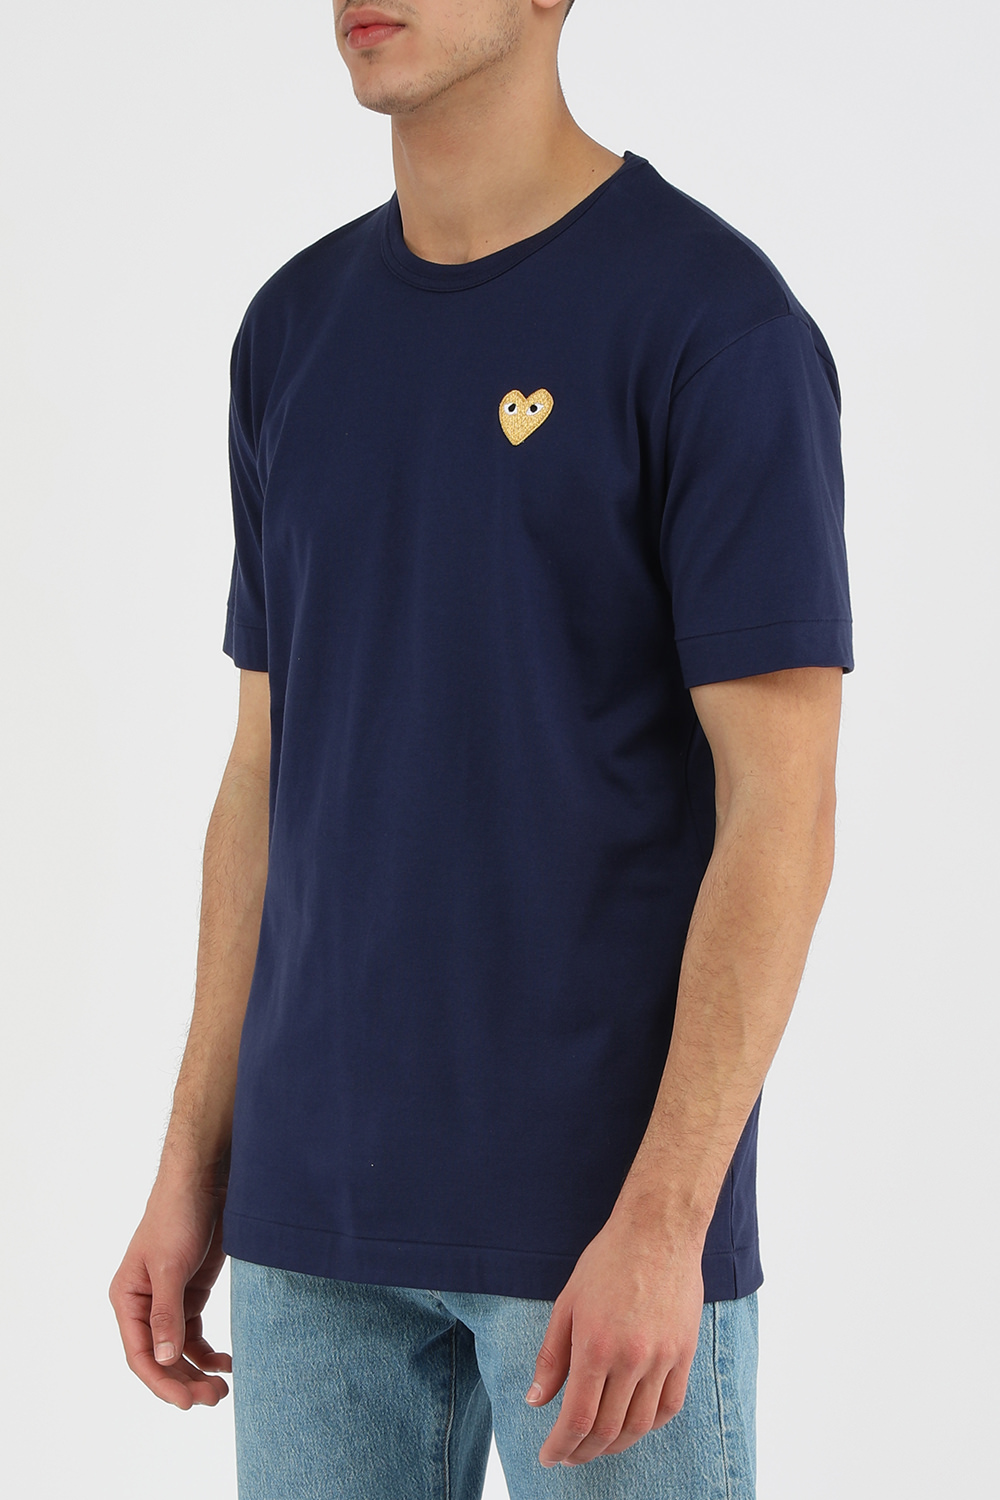 חולצת טי כחולה עם סמל לב זהב COMME des GARCONS